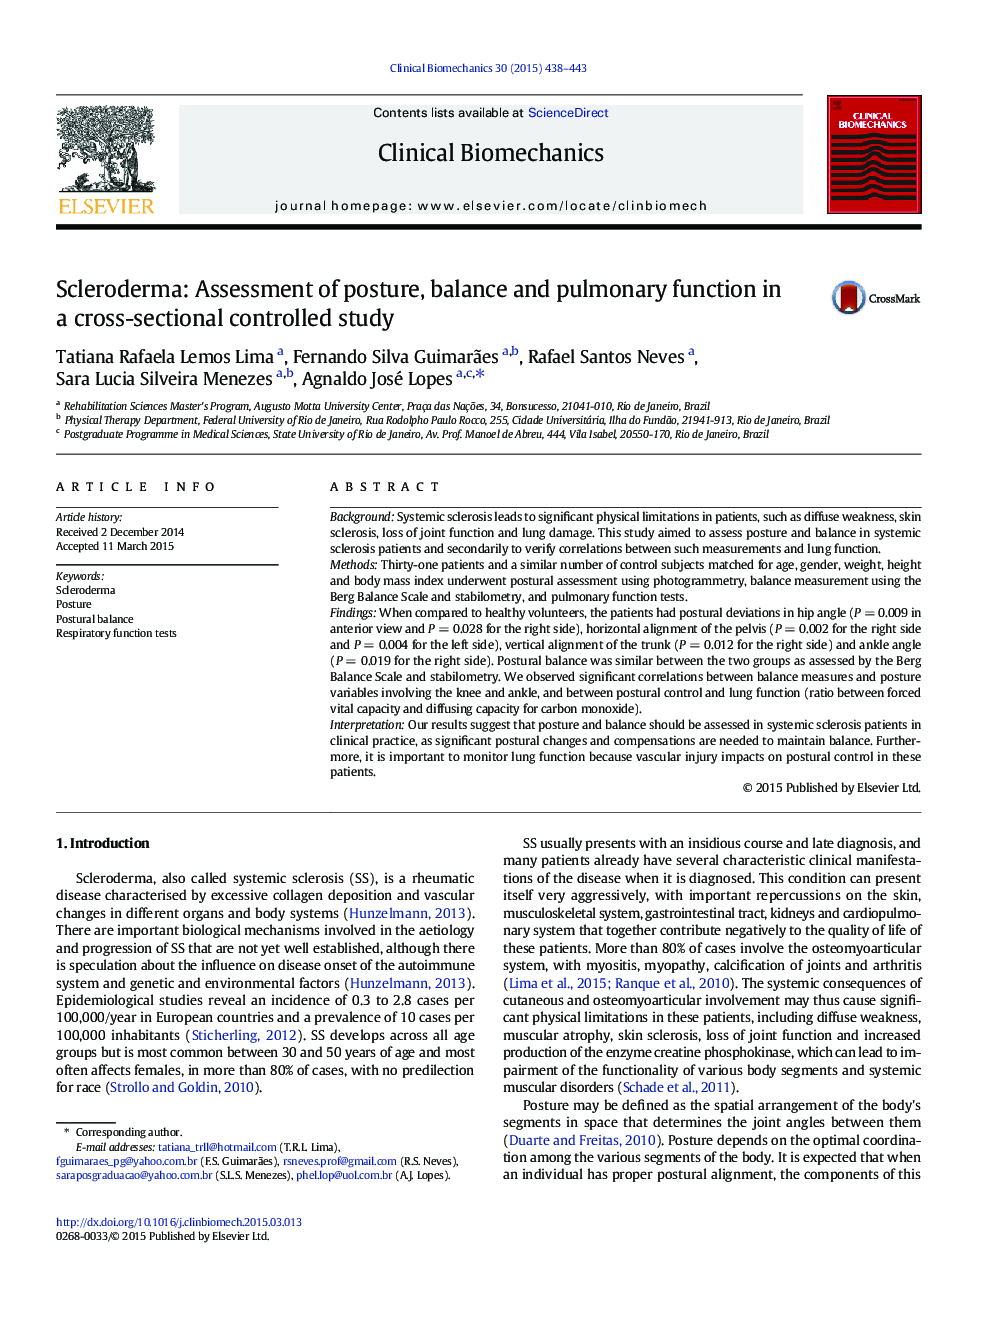 اسکلرودرمی: بررسی وضعیت، تعادل و عملکرد ریوی در یک مطالعه کنترل شده مقطعی 